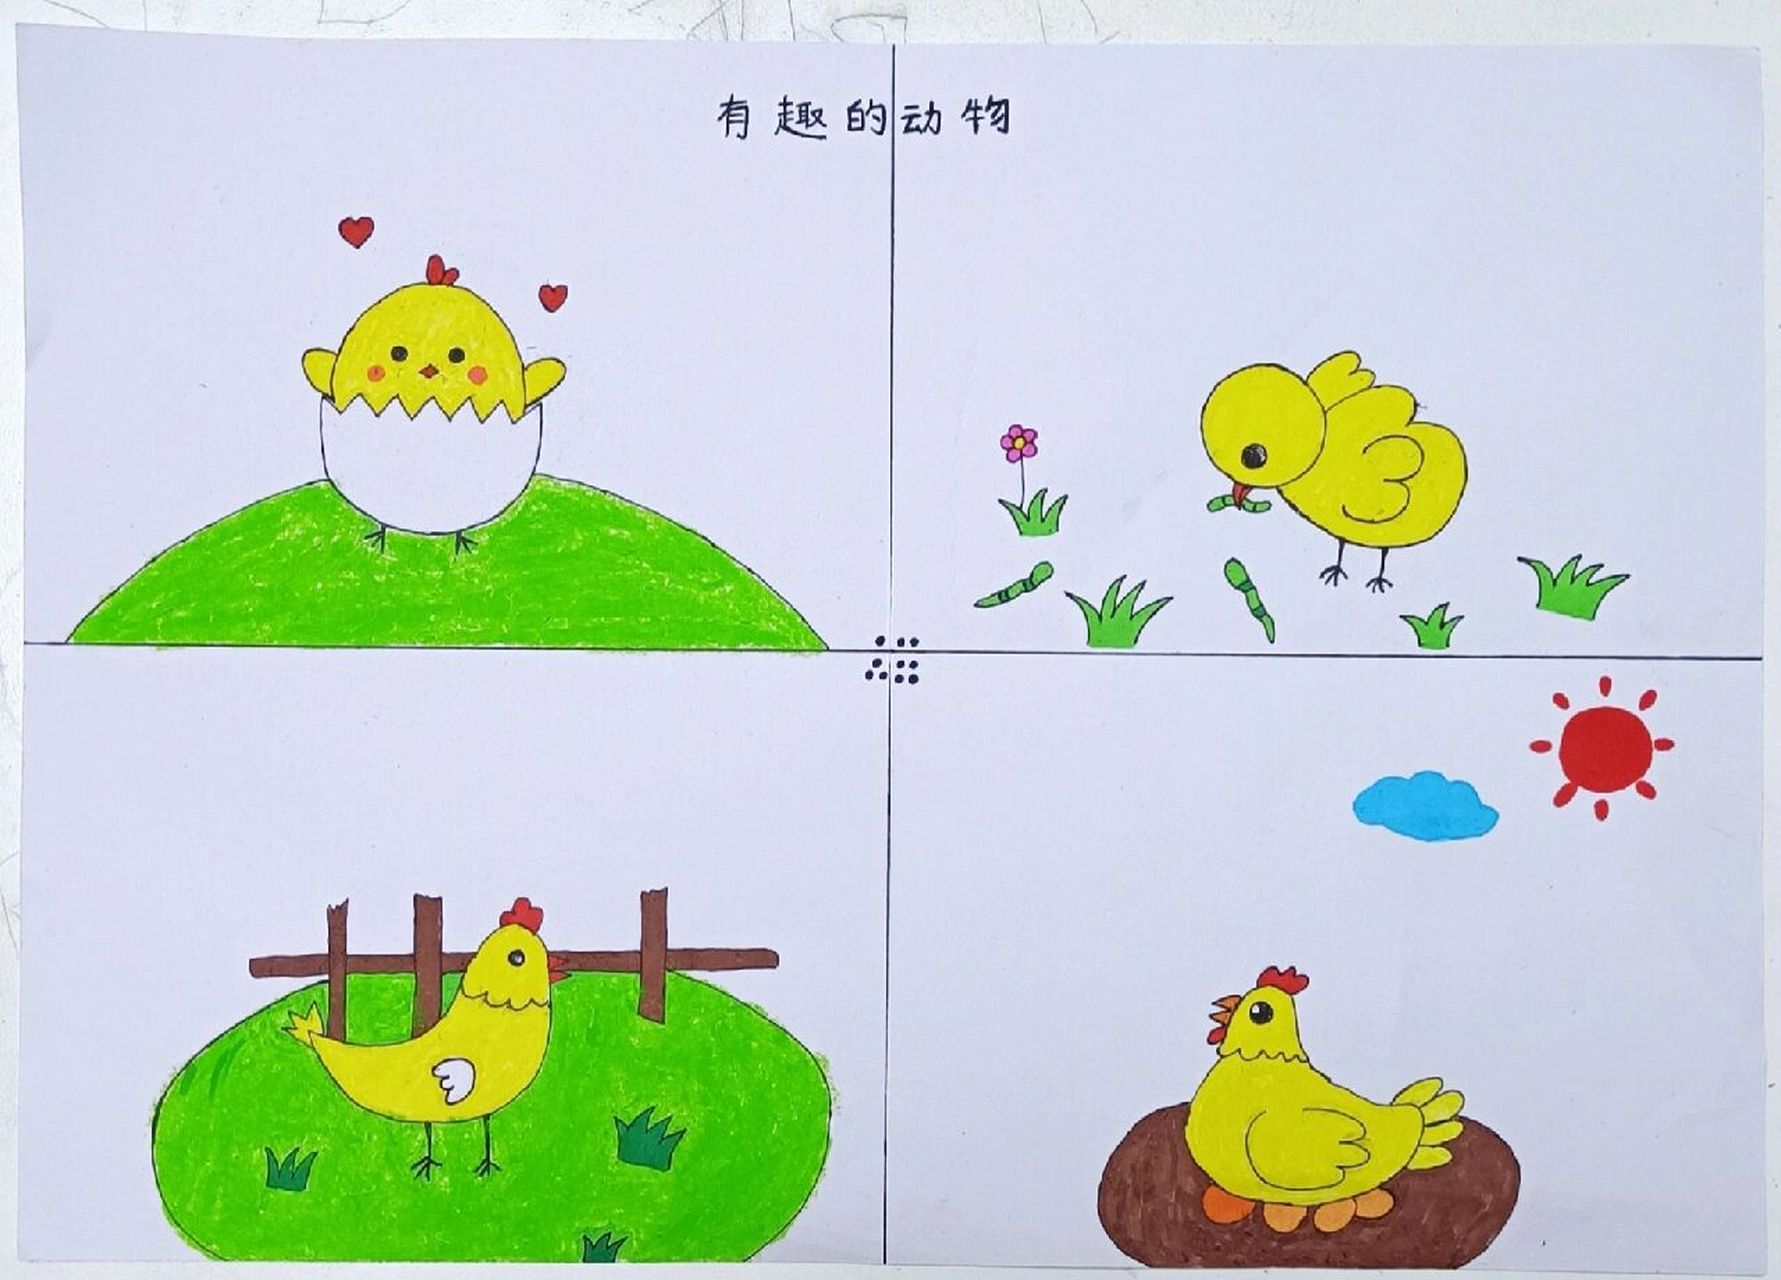 小鸡的生长过程连环画图片